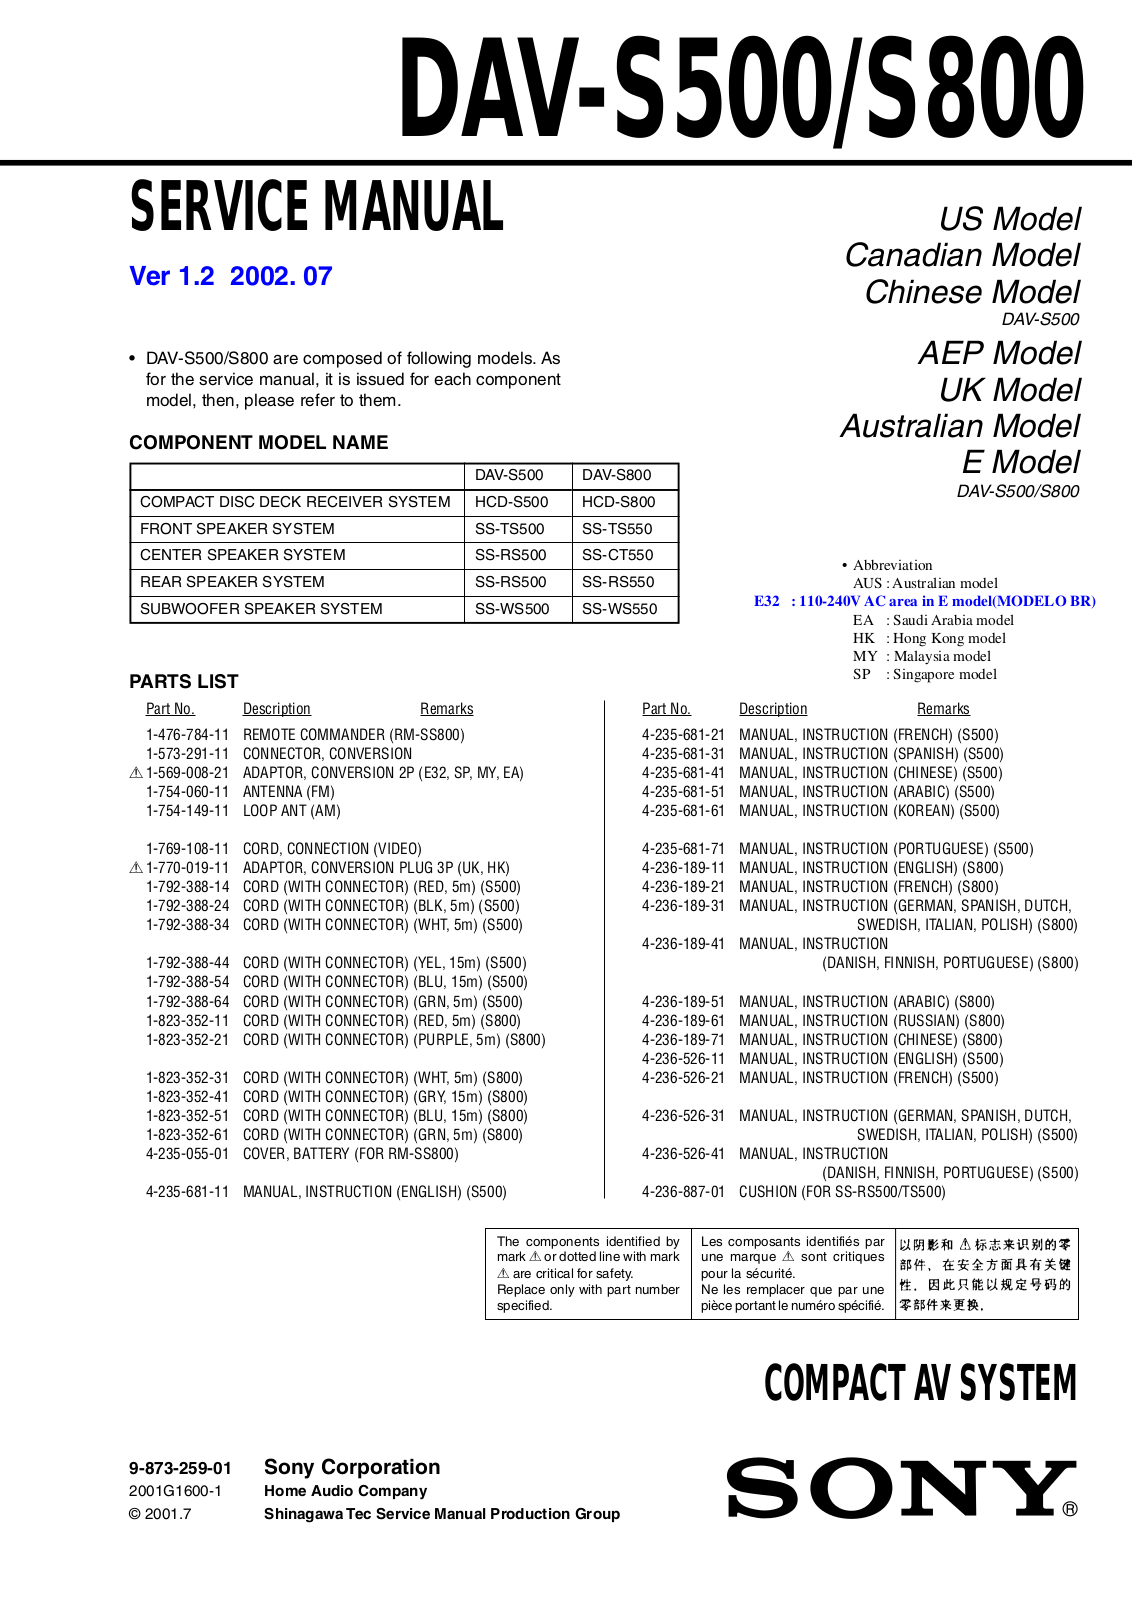 SONY STR1005, DAV S800, DAV DZ77T, DAV S500 Service Manual